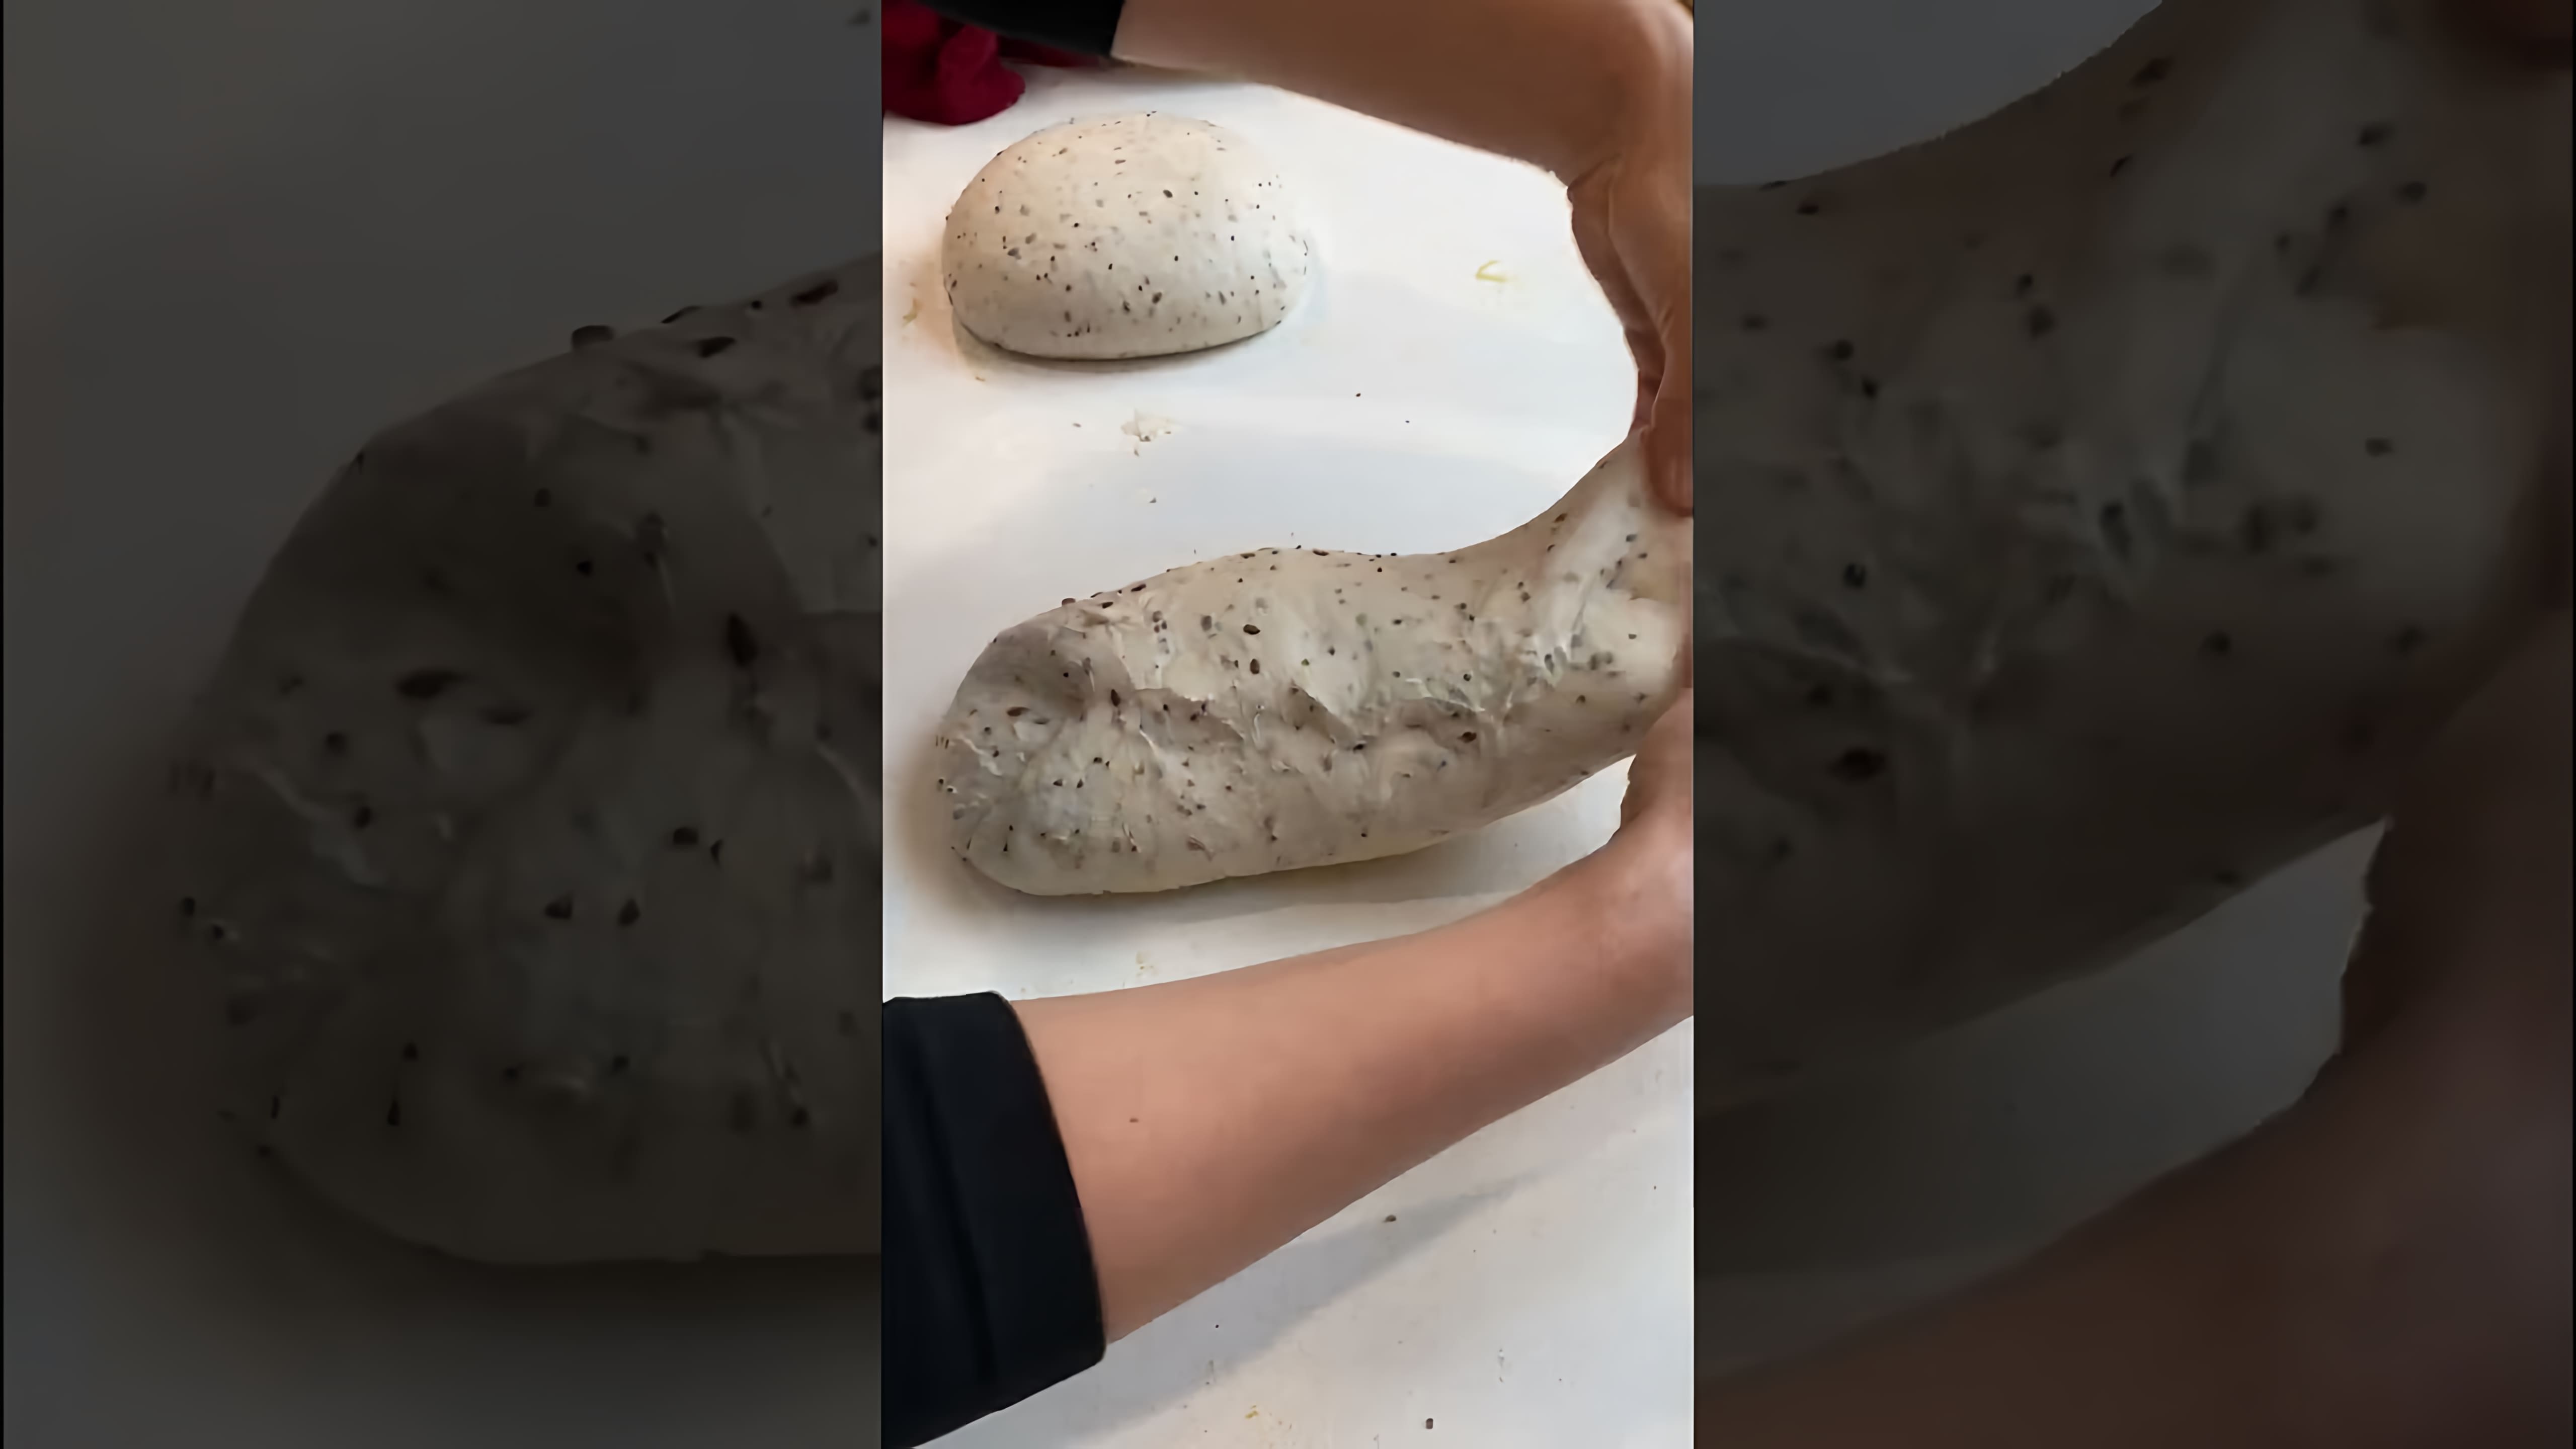 В этом видео демонстрируется процесс формовки тартина - хлеба на закваске без промышленных дрожжей